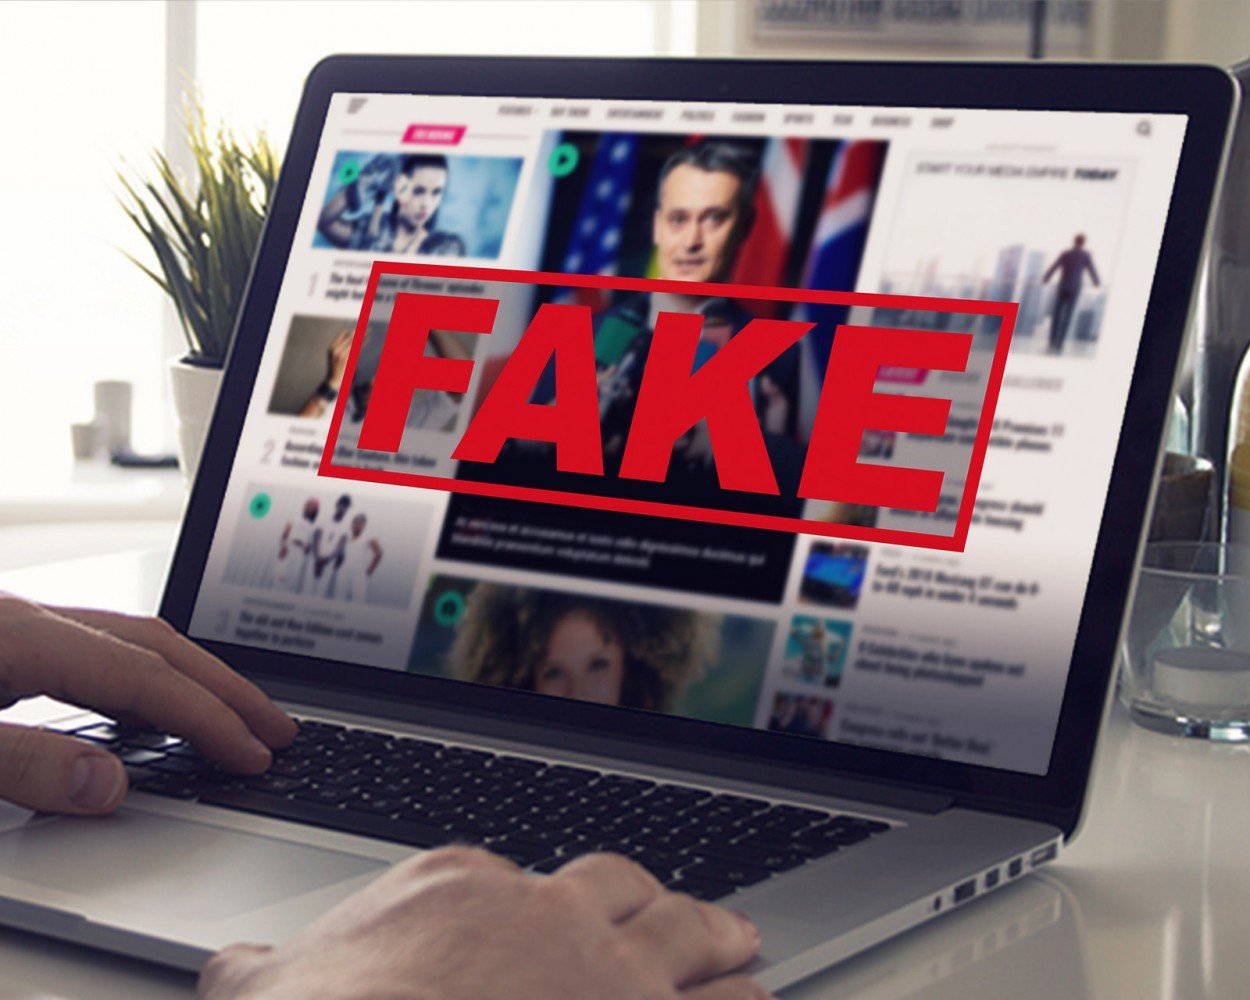 Fake News, specialmente ‘navigando’, “attenti al pesce d’aprile che fa arricchire soggetti senza scrupoli”, avverte Federprivacy